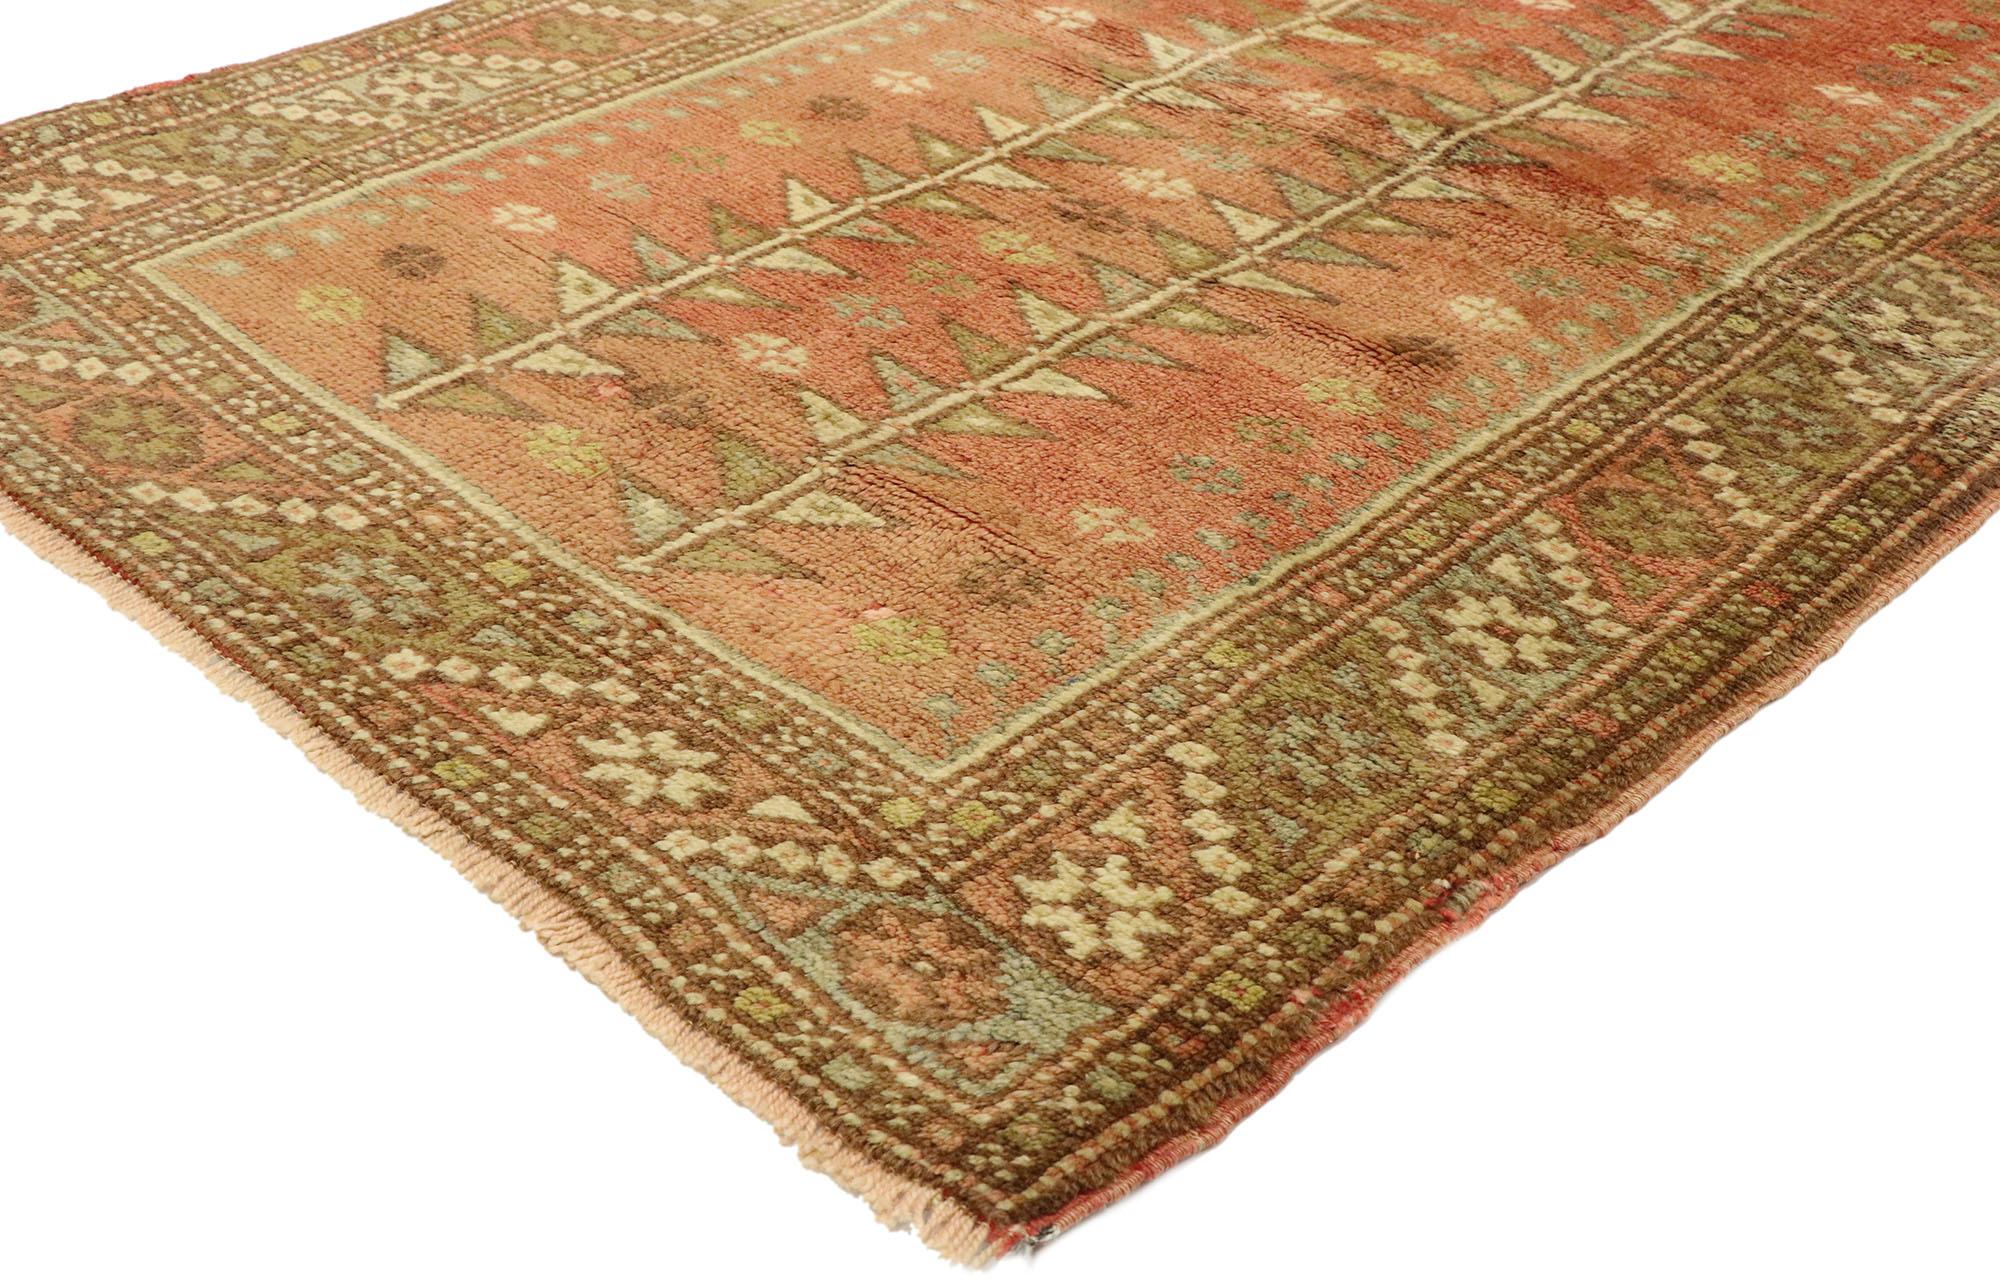 51384 Vintage Türkisch Oushak Teppich, 03'02  X 04'08. Kleine türkische Oushak-Teppiche mit Mihrab-Muster sind traditionelle Teppiche aus der Region Oushak in der Türkei. Sie weisen in der Mitte eine Mihrab auf, eine bogenförmige Nische, die die